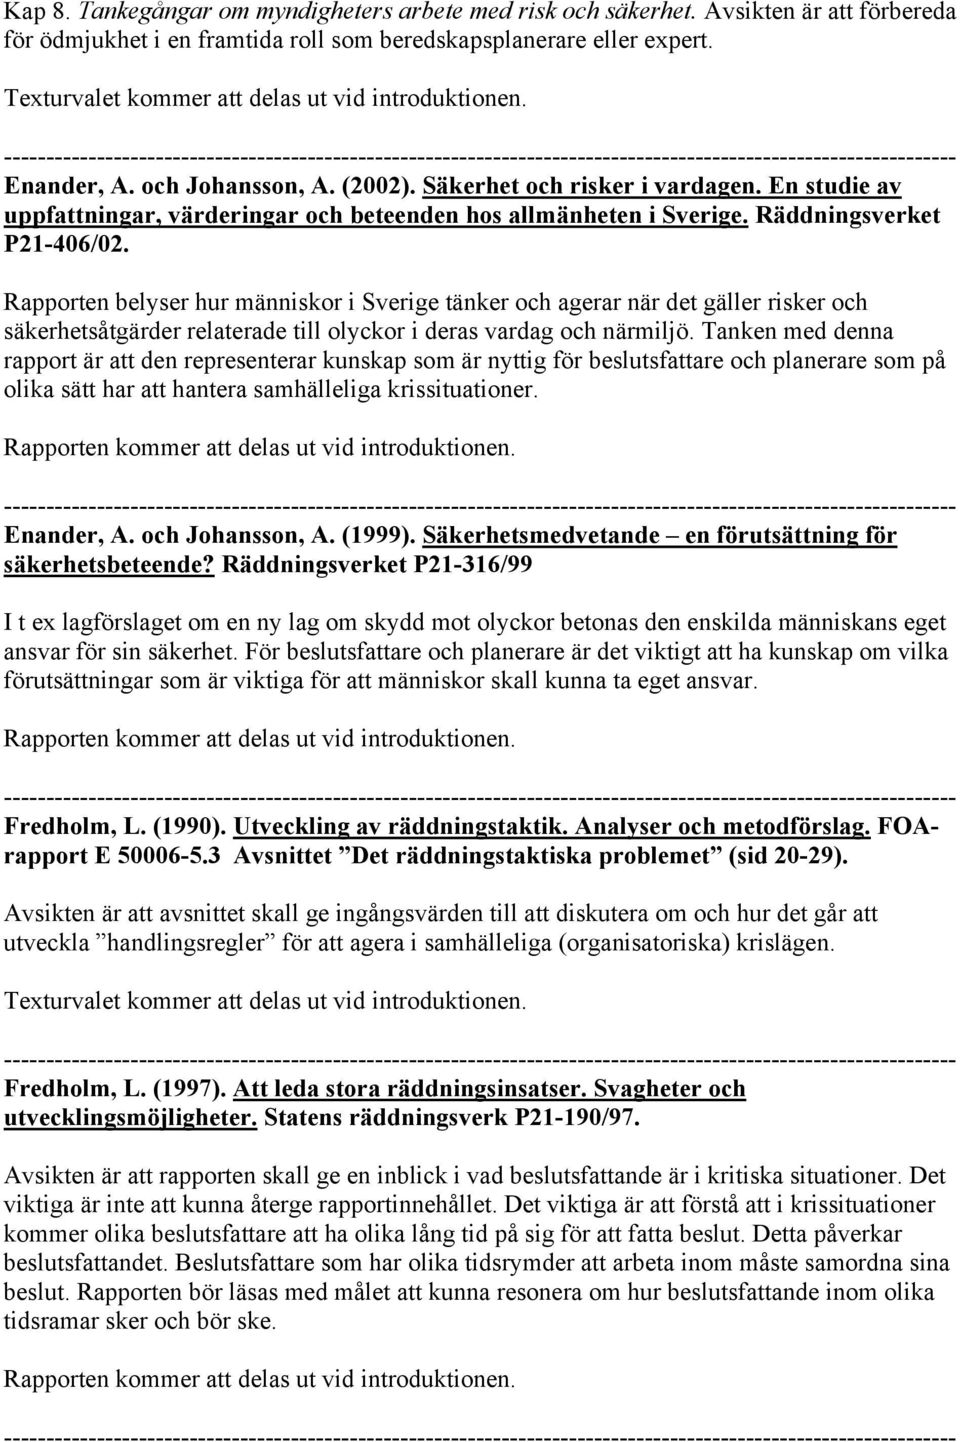 En studie av uppfattningar, värderingar och beteenden hos allmänheten i Sverige. Räddningsverket P21-406/02.